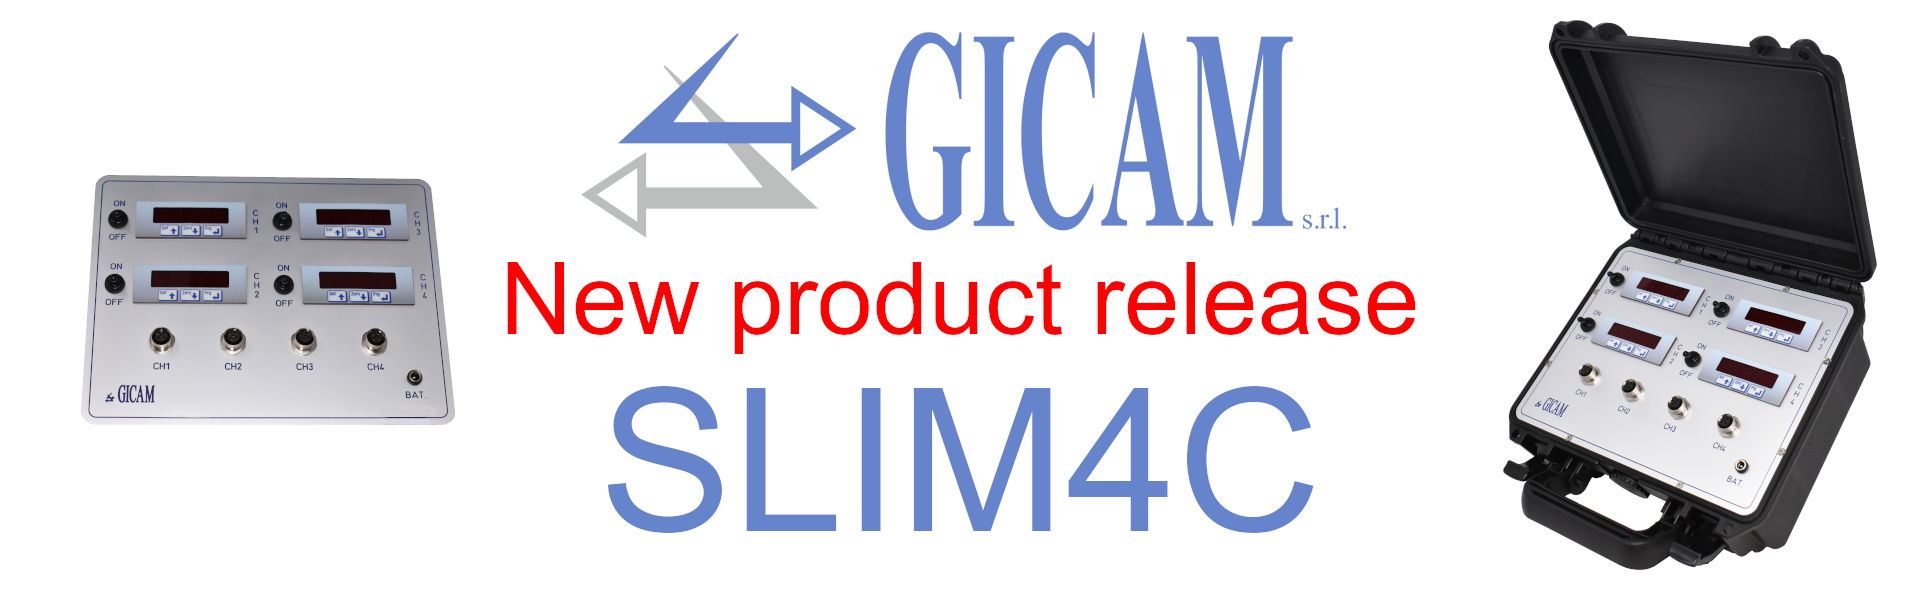 SLIM4C costituito da 4 strumenti che sono in grado di visualizzare altrettanti canali dedicati